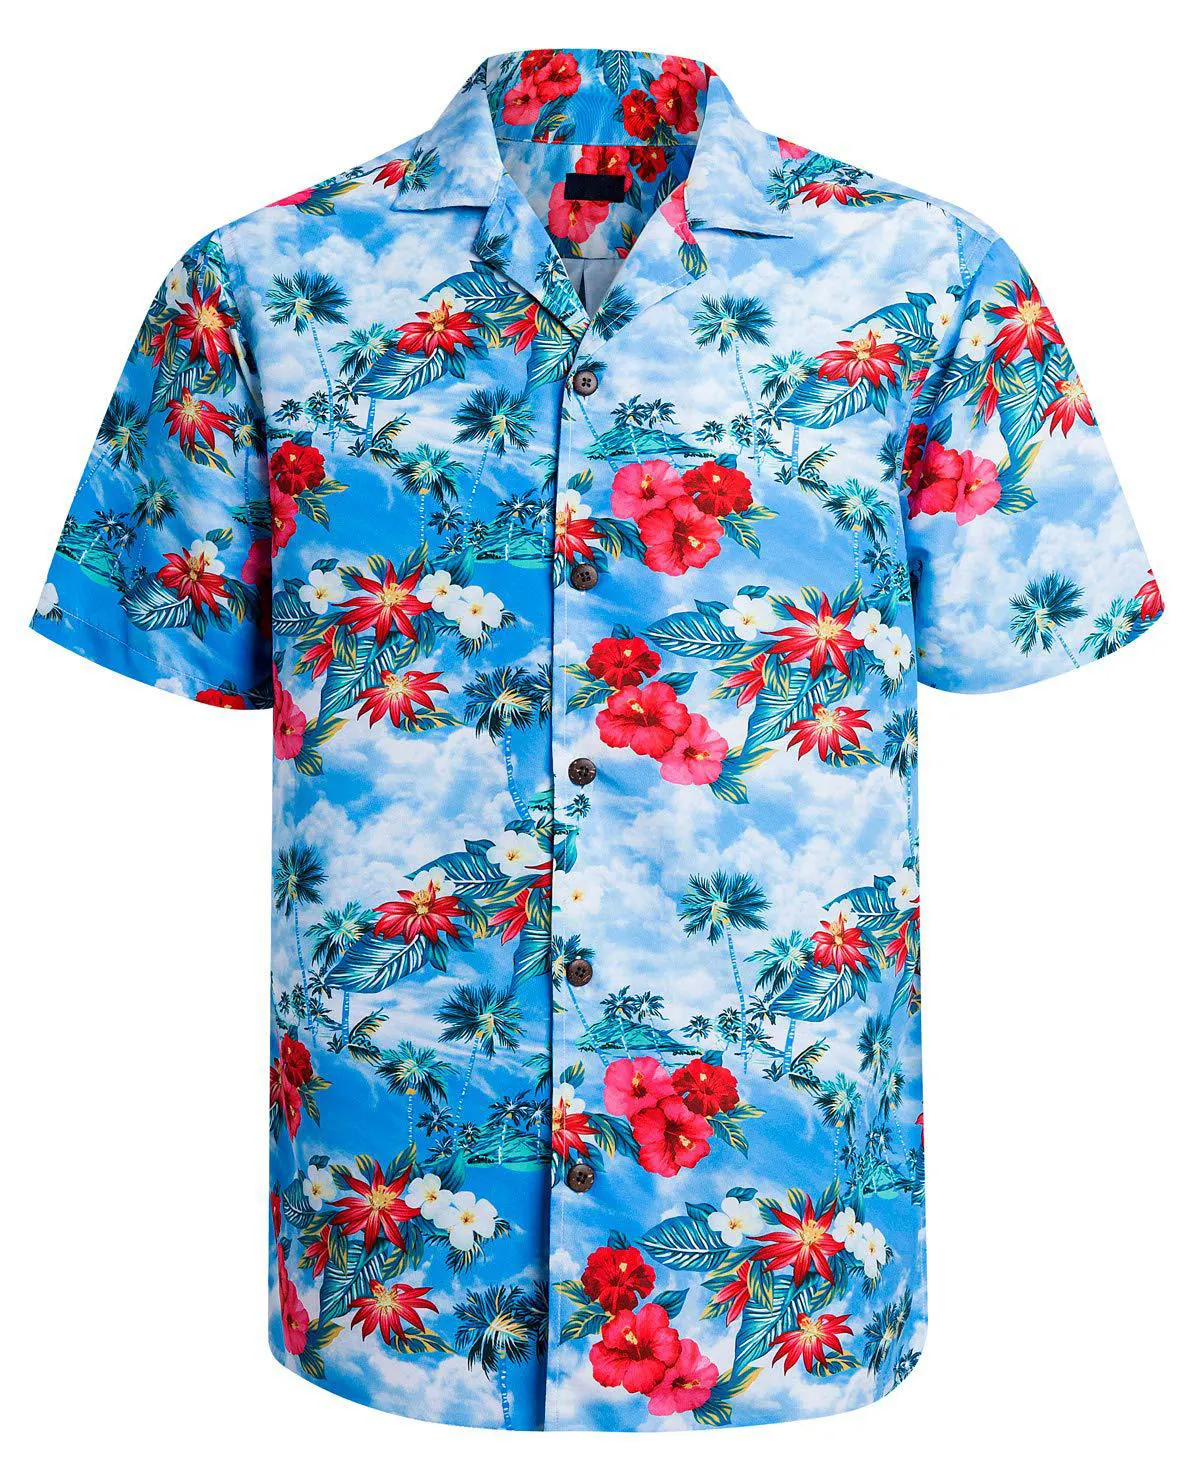 OEM/ODM camisa para hombres hawaiana camisa de moda de manga corta suelta transpirable camisa de flores de verano para hombres